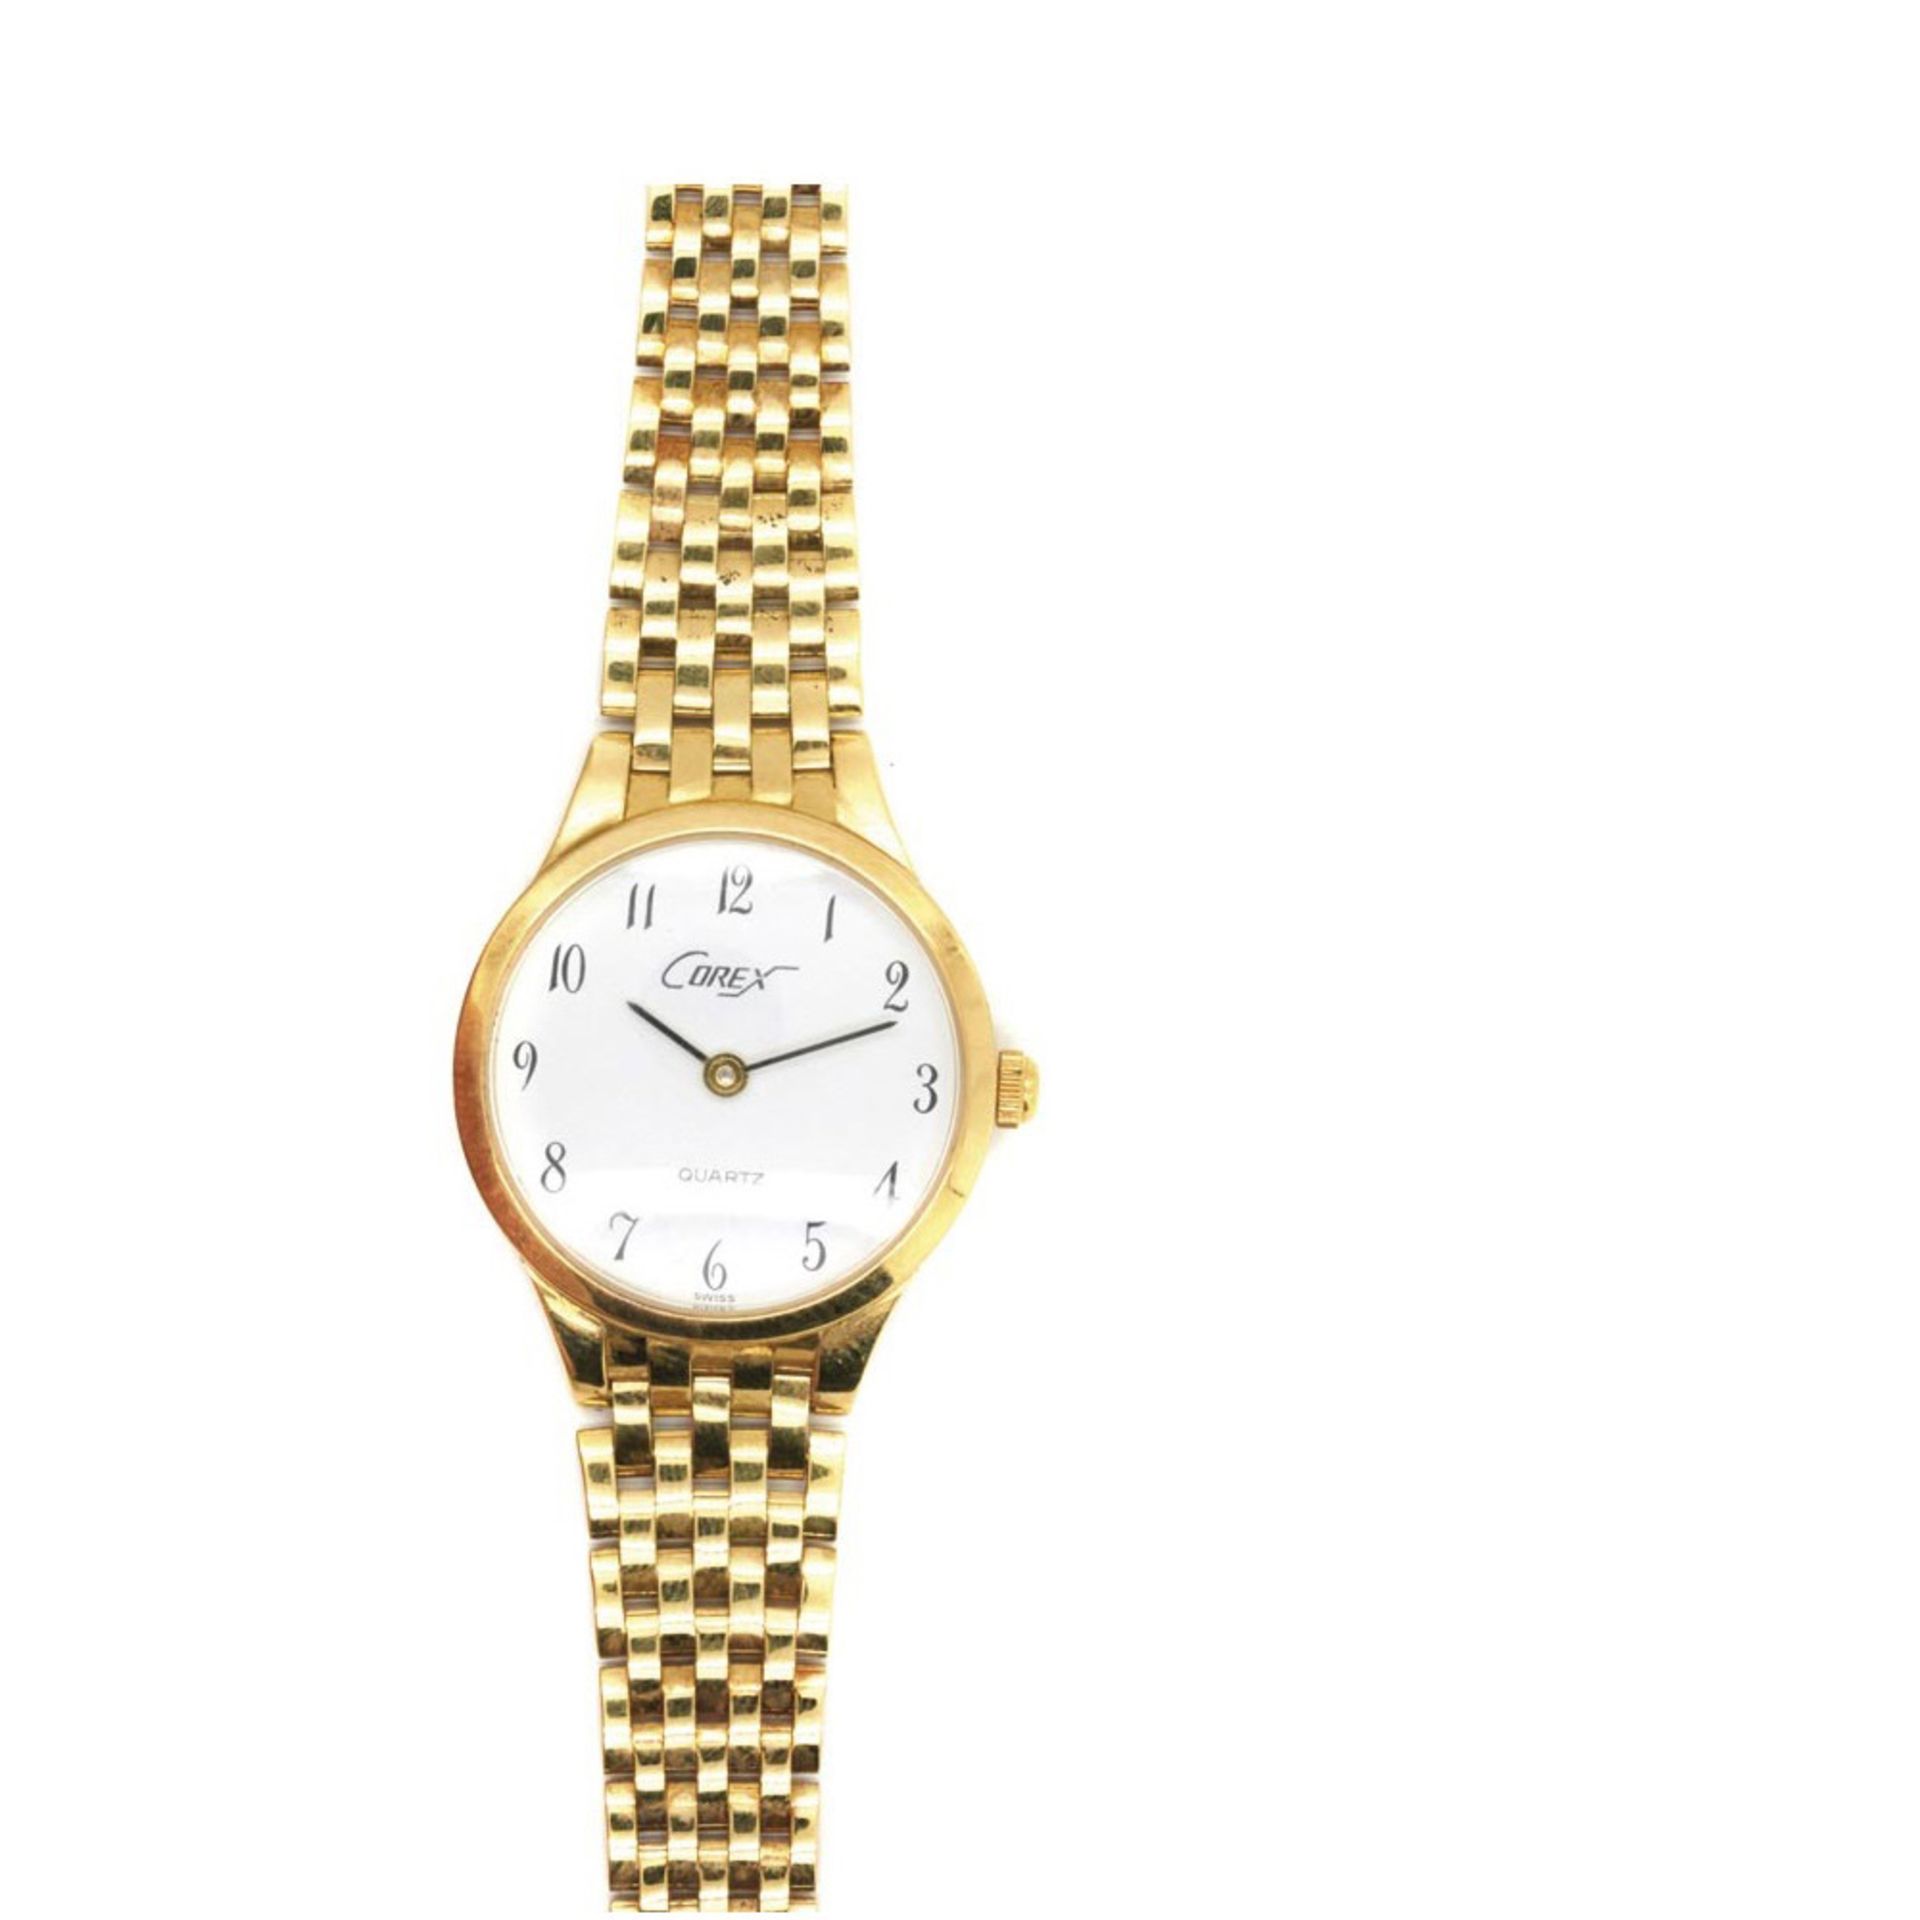 Corex gold wristwatch Reloj Corex de pulsera para señora. En oro. Esfera blanca con numeración